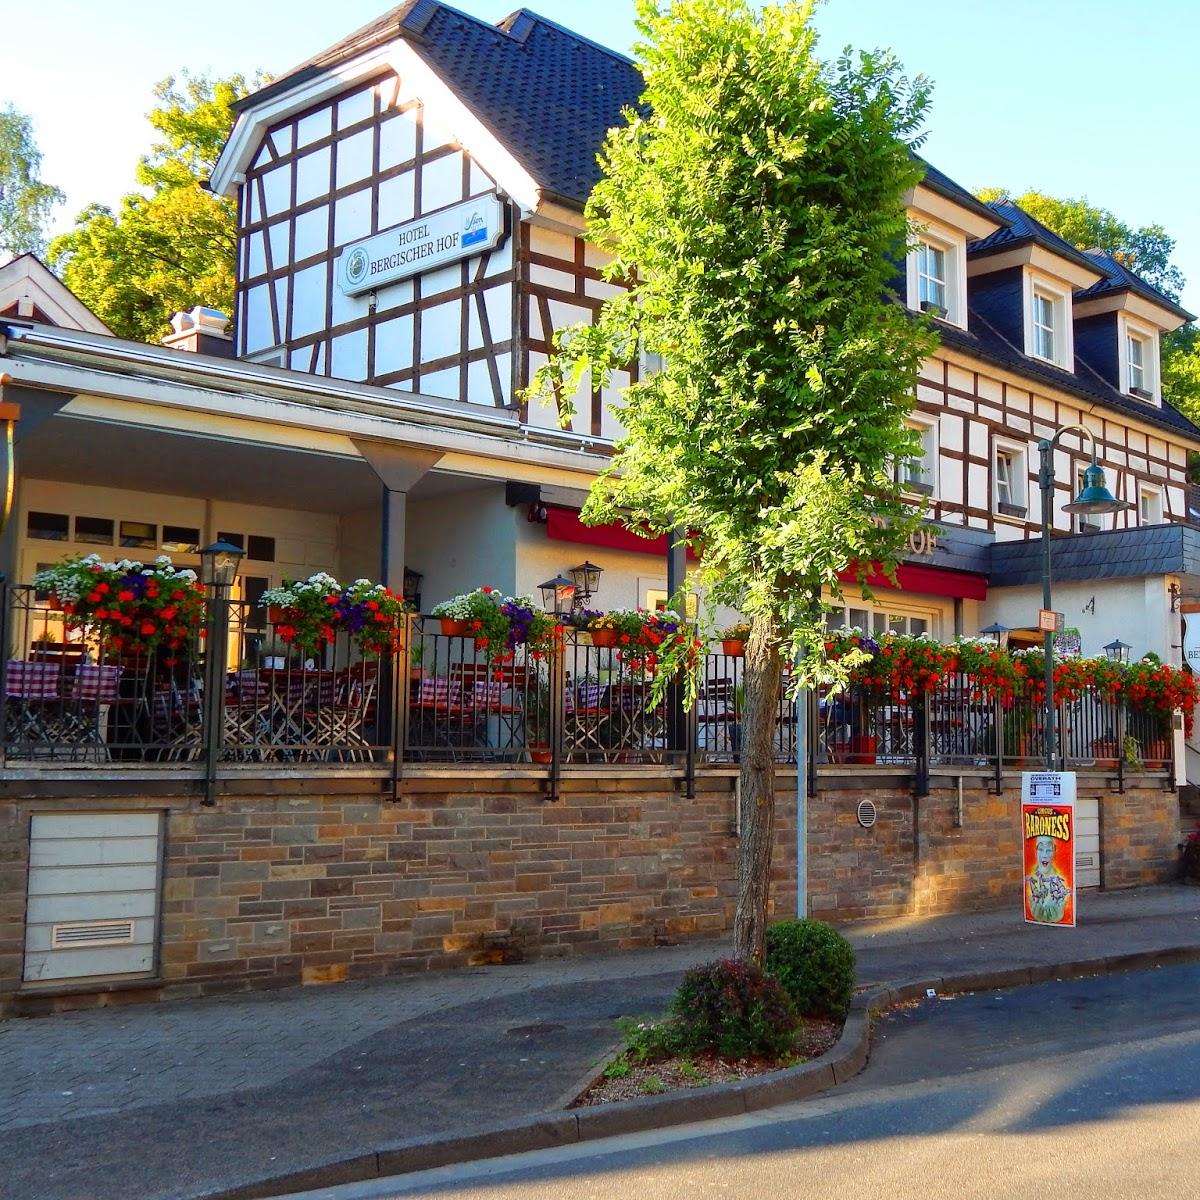 Restaurant "Bergischer Hof" in Overath